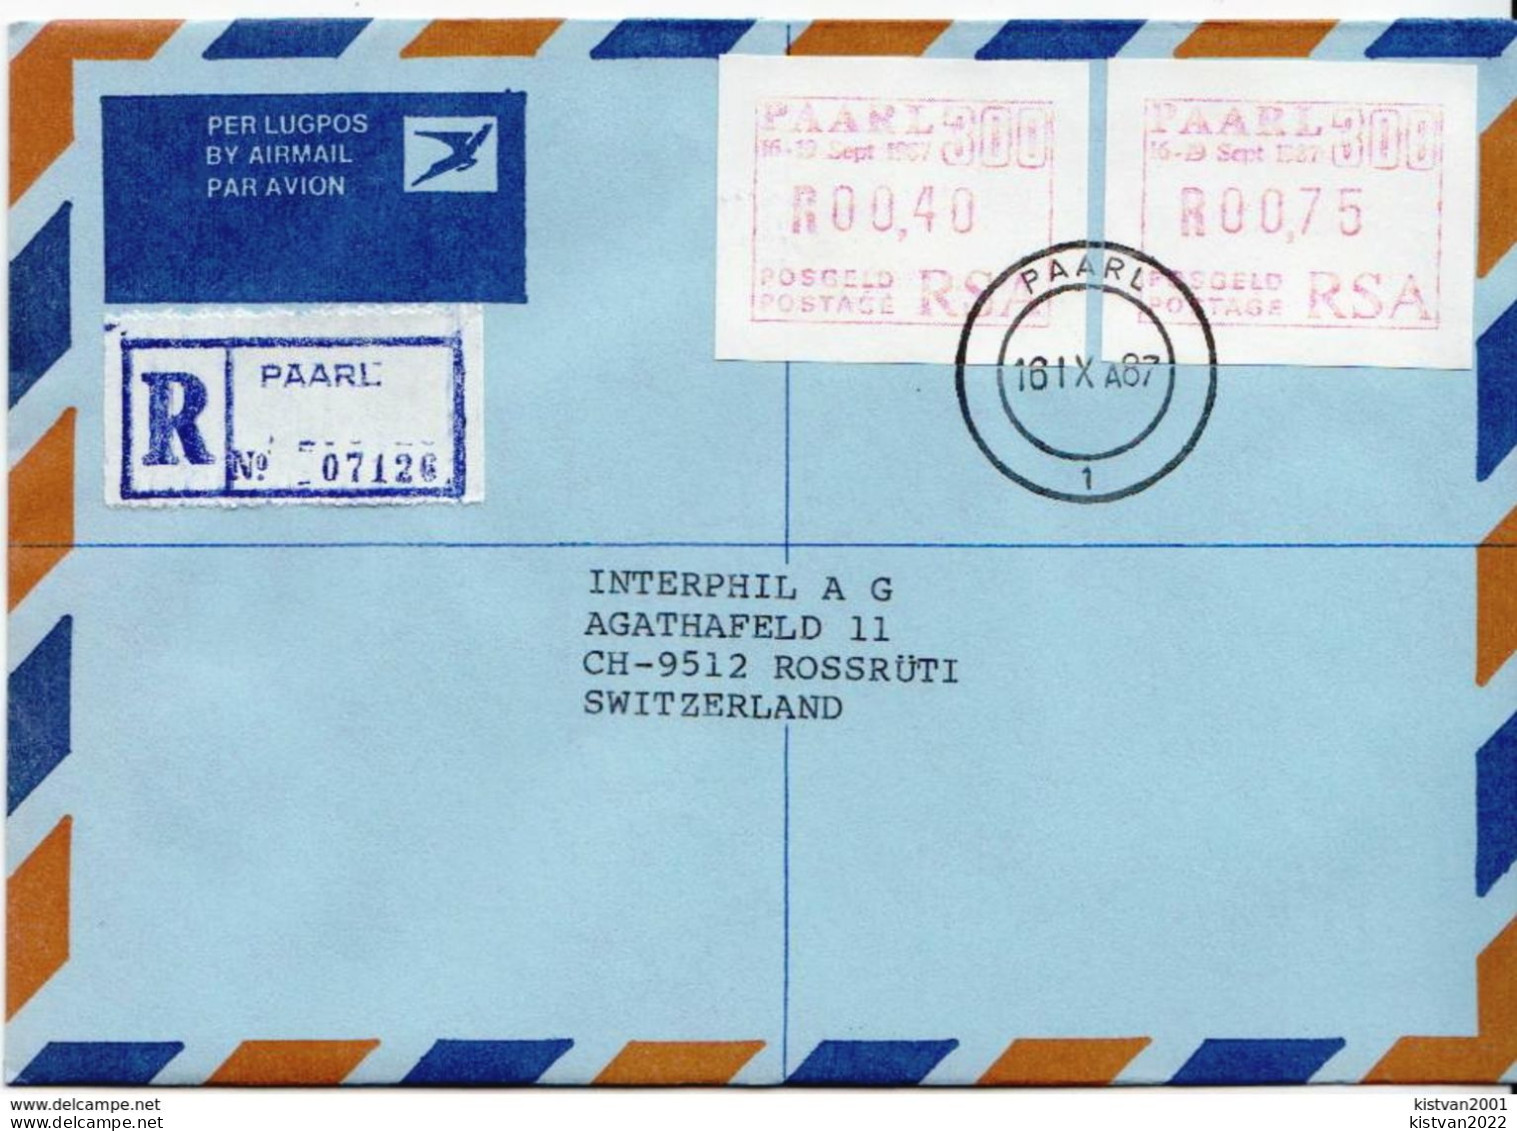 Postal History: South Africa Cover With Machine Stamp - Viñetas De Franqueo (Frama)